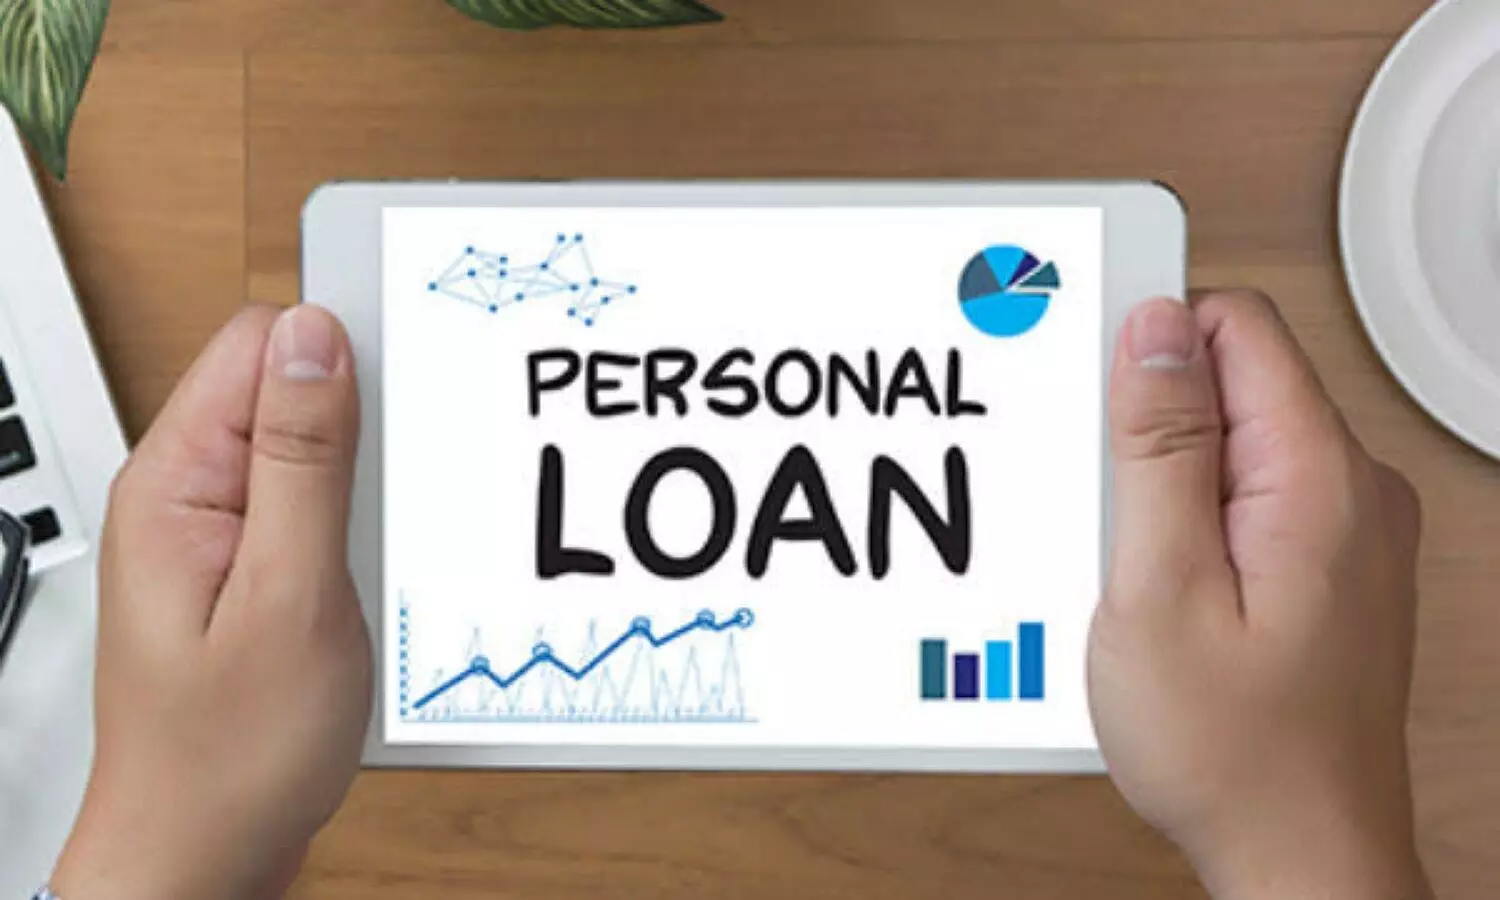 Personal loan information